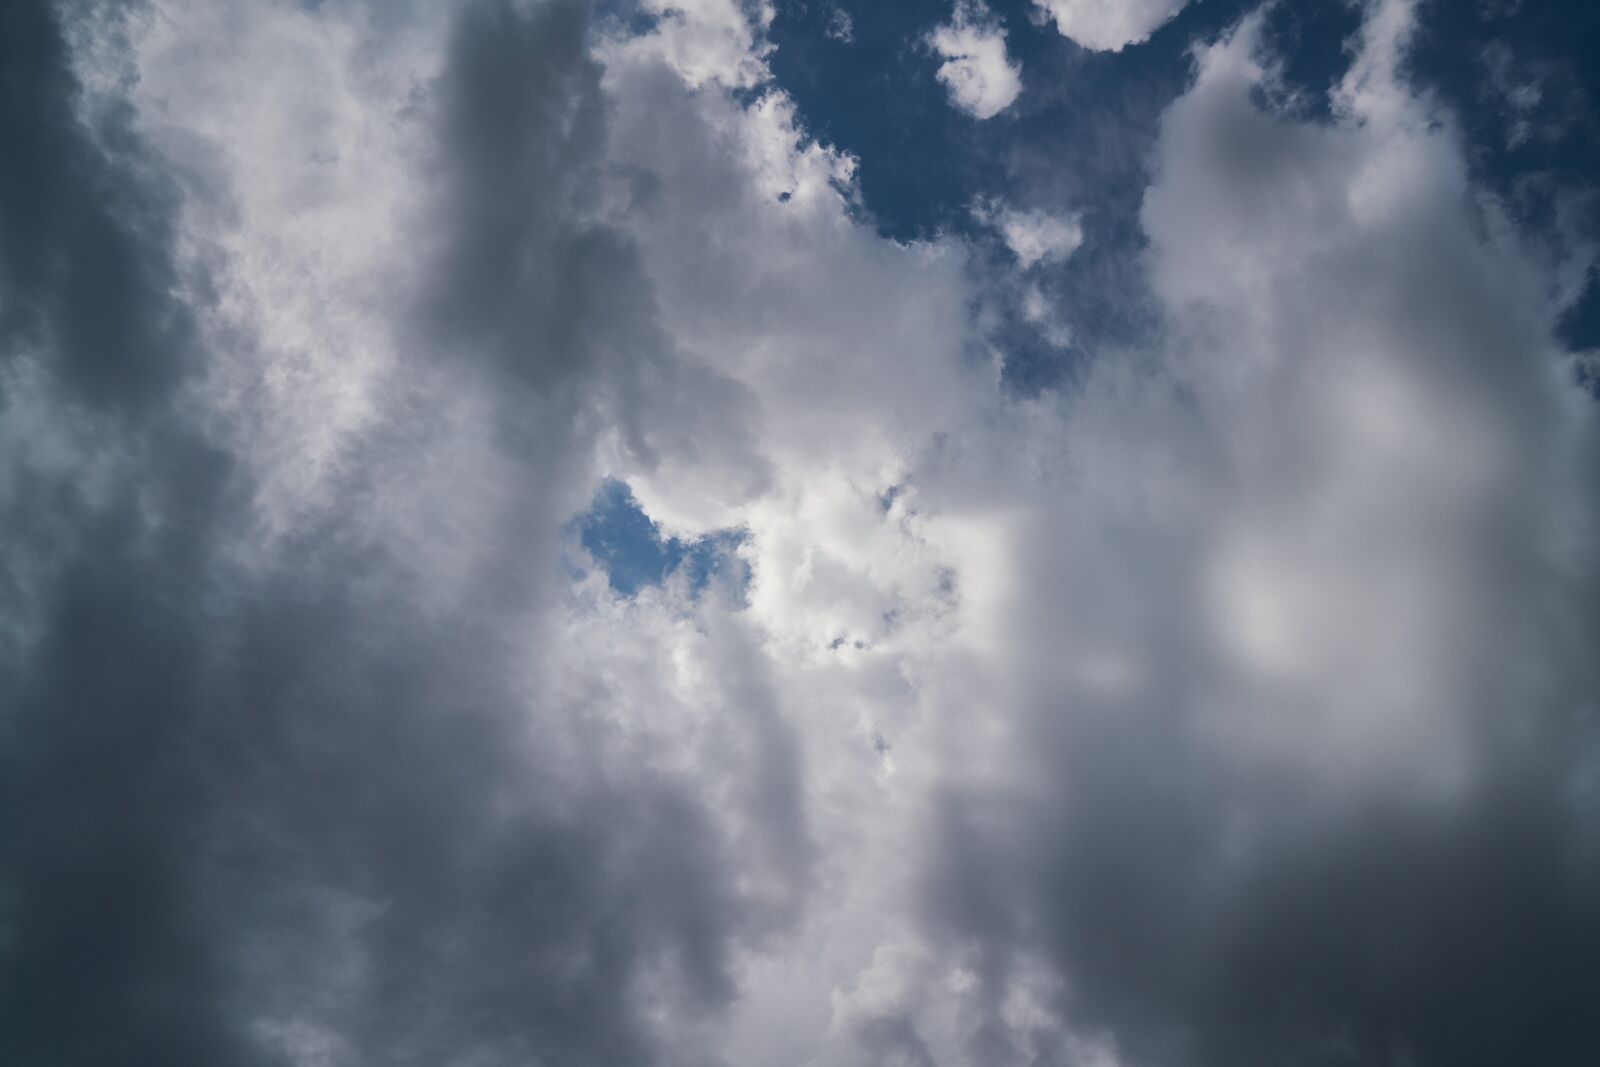 Sony Vario Tessar T* FE 24-70mm F4 ZA OSS sample photo. Cloud, sky, background photography